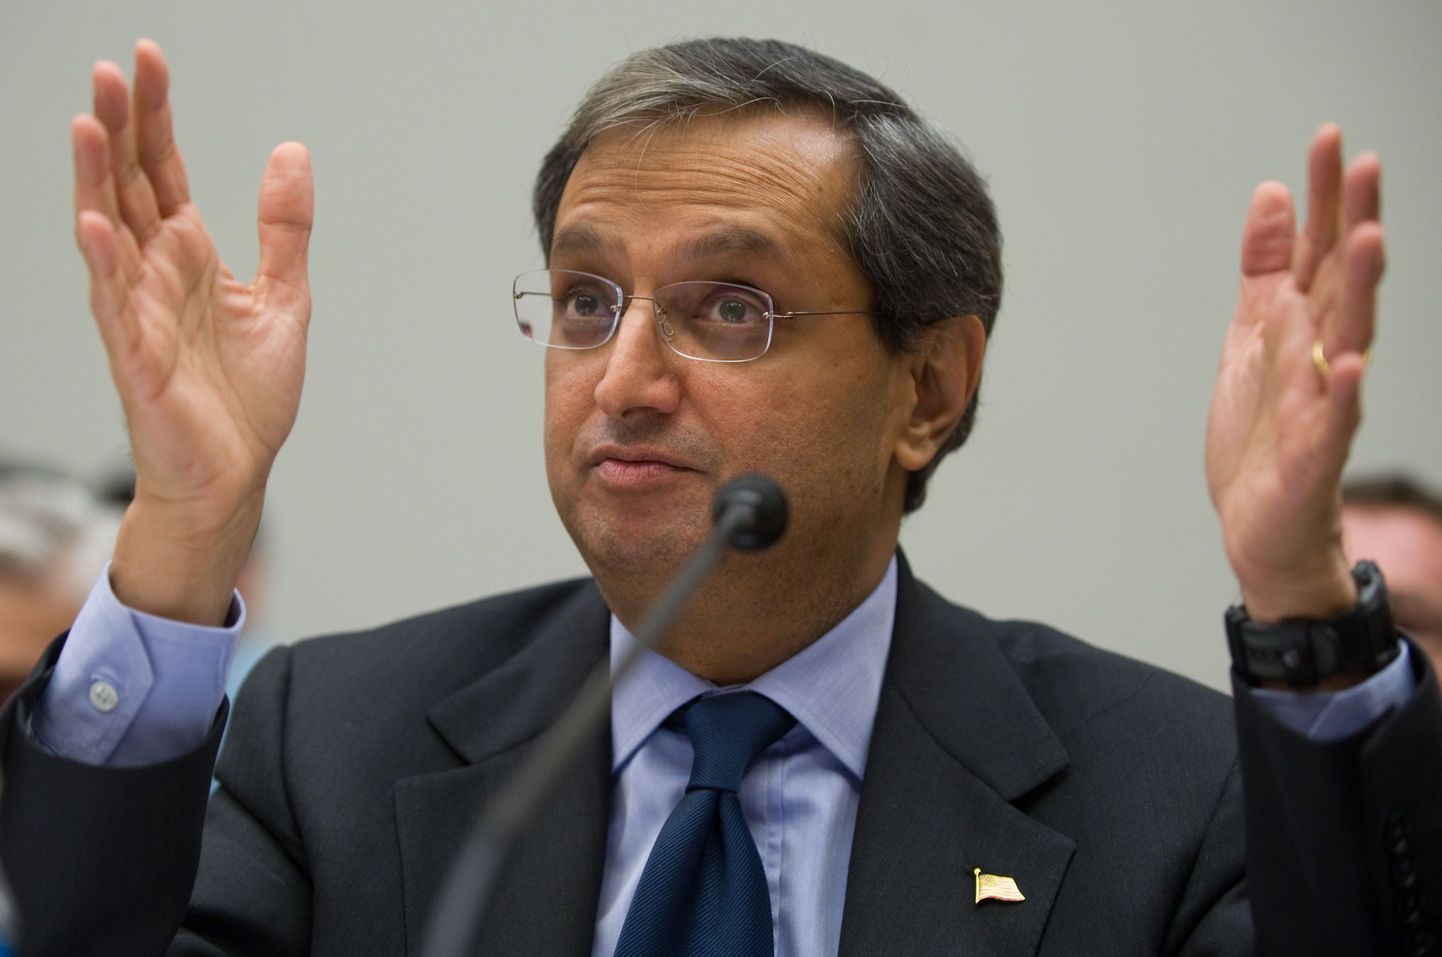 Citigroupi tegevjuht Vikram Pandit.